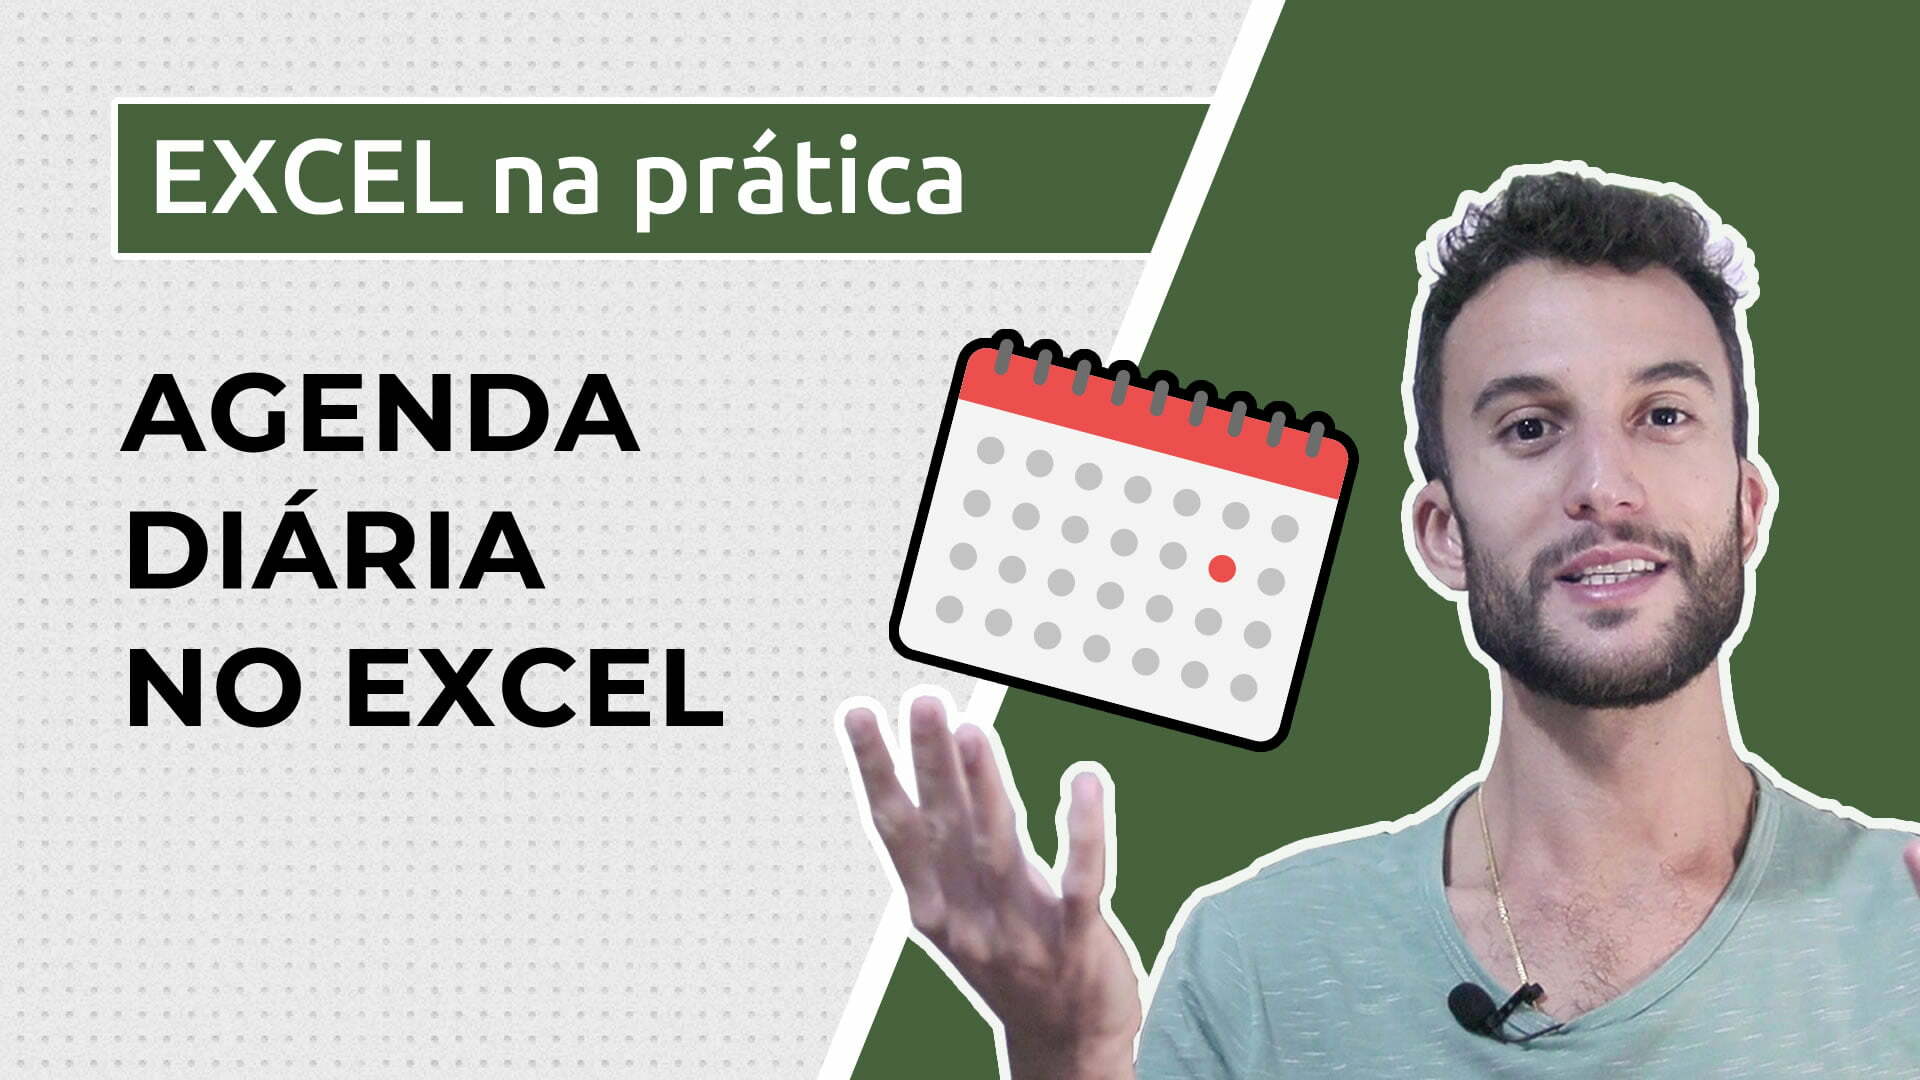 Criando uma agenda diária em Excel - Edu Descomplicado